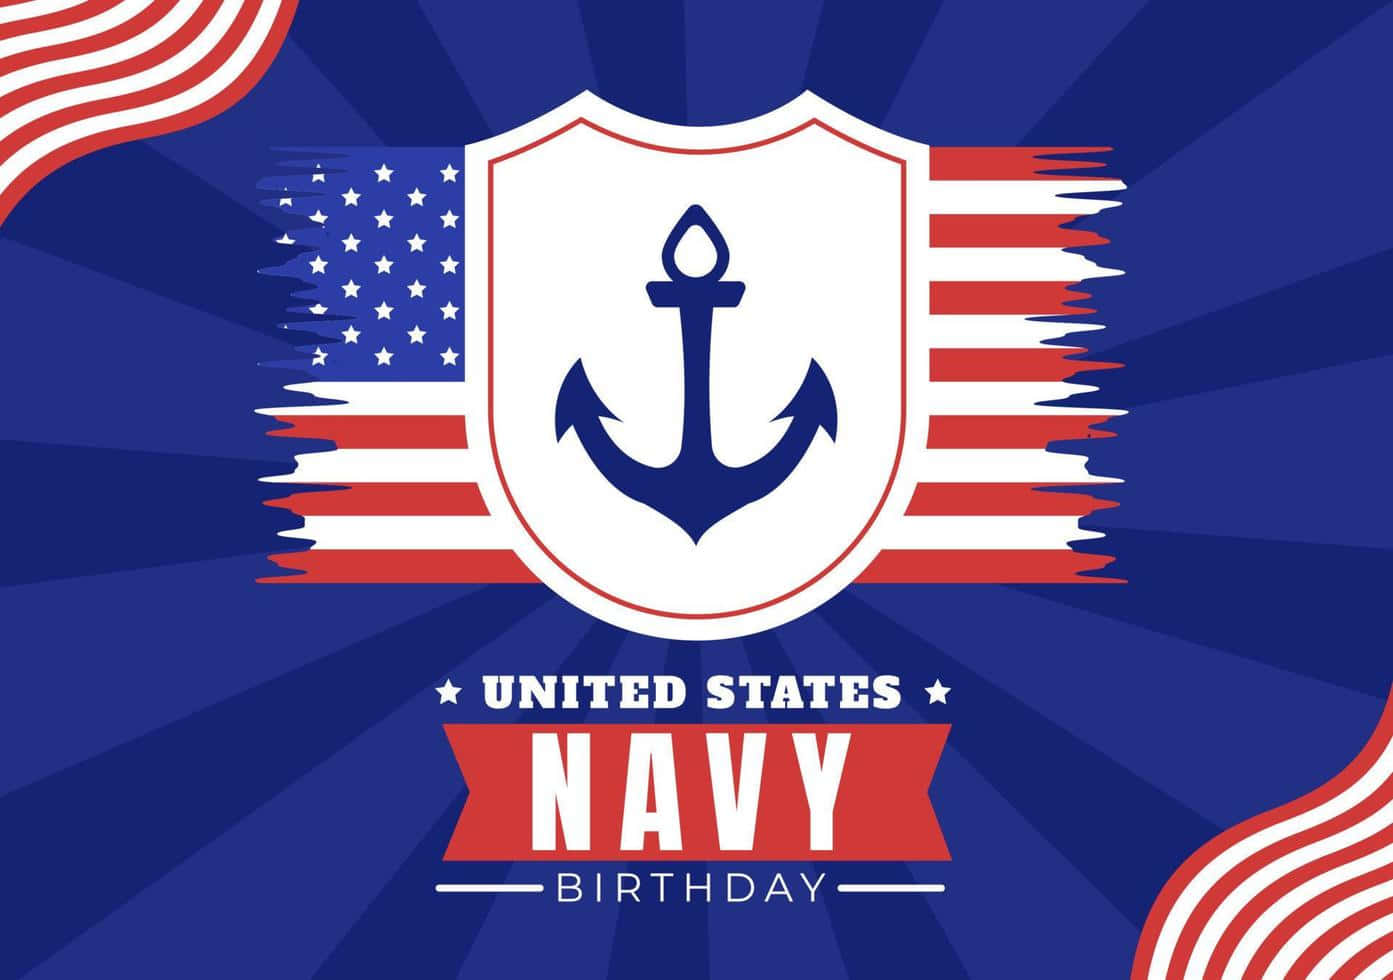 Dieunited States Navy Ist Ein Integraler Bestandteil Der Amerikanischen Militärgeschichte.